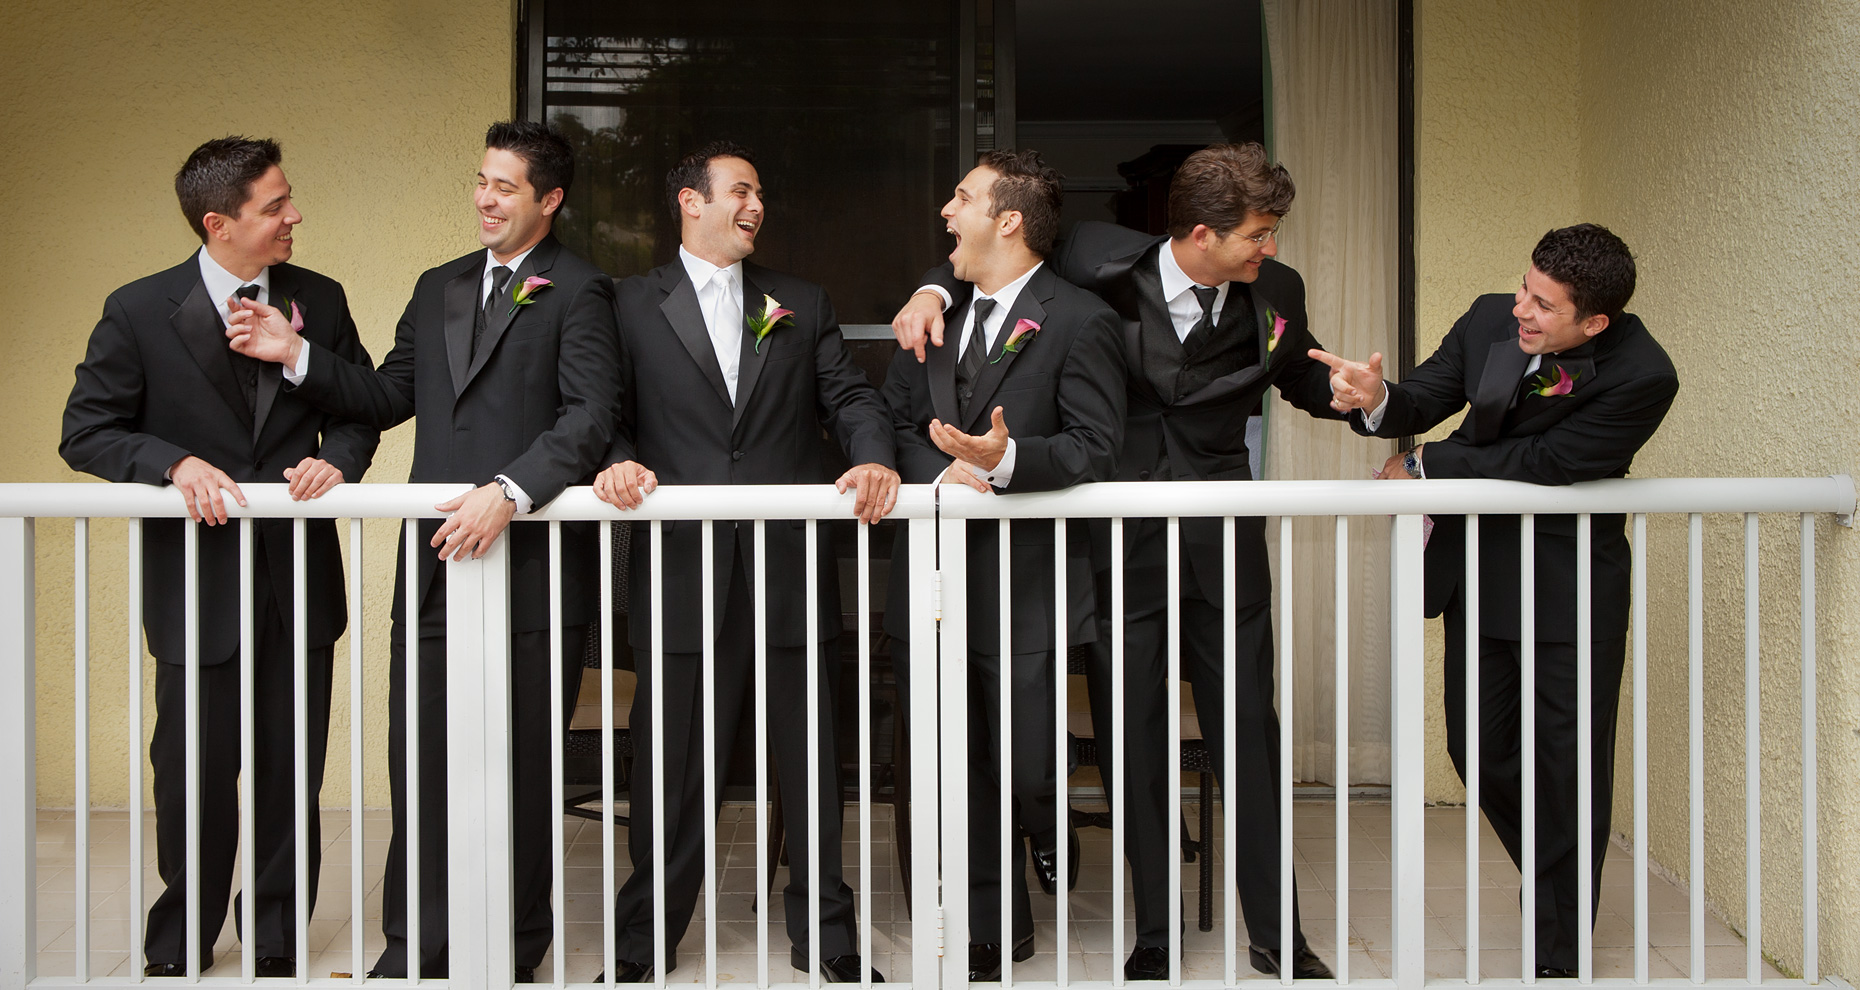 Wedding_Bachelor-Porch01